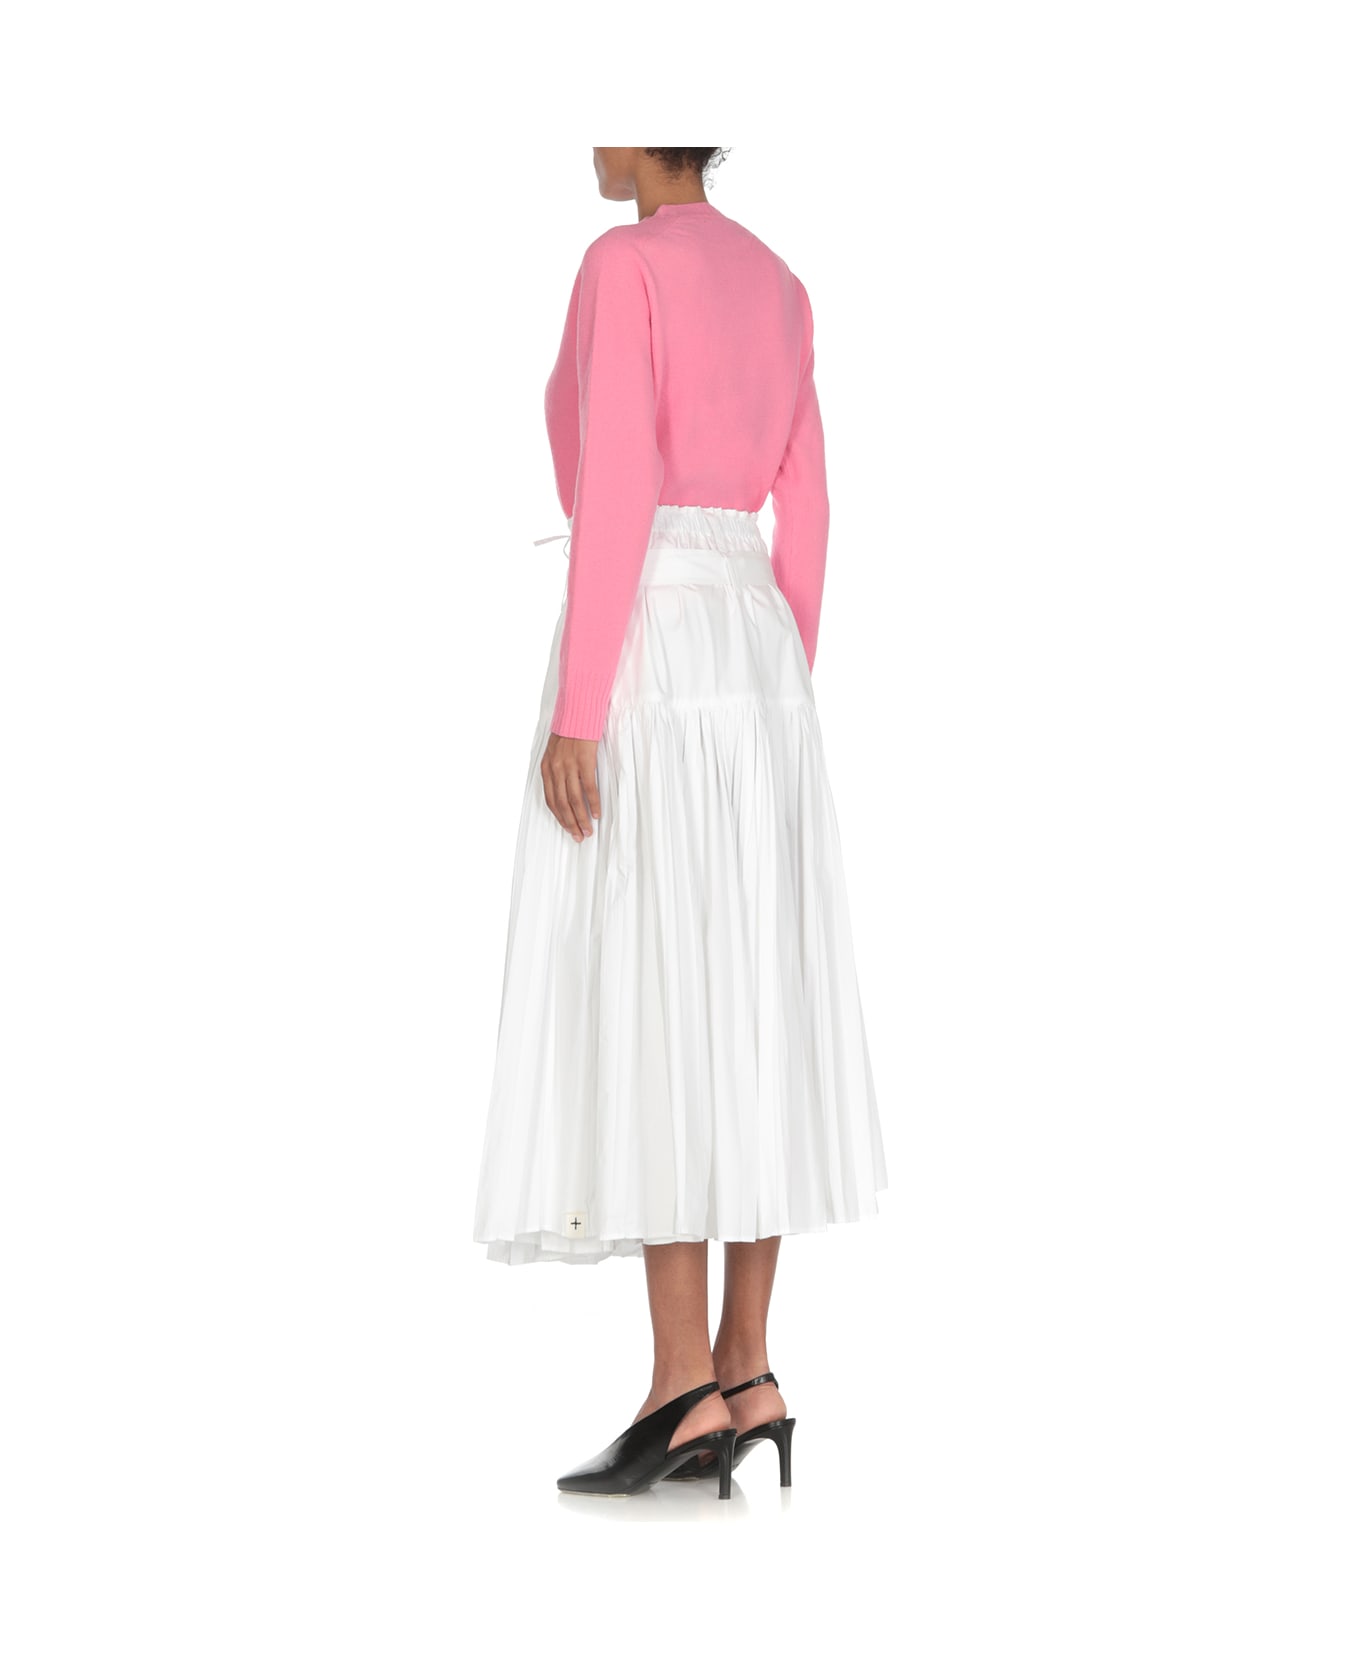 Jil Sander Long Pleated Skirt - White スカート